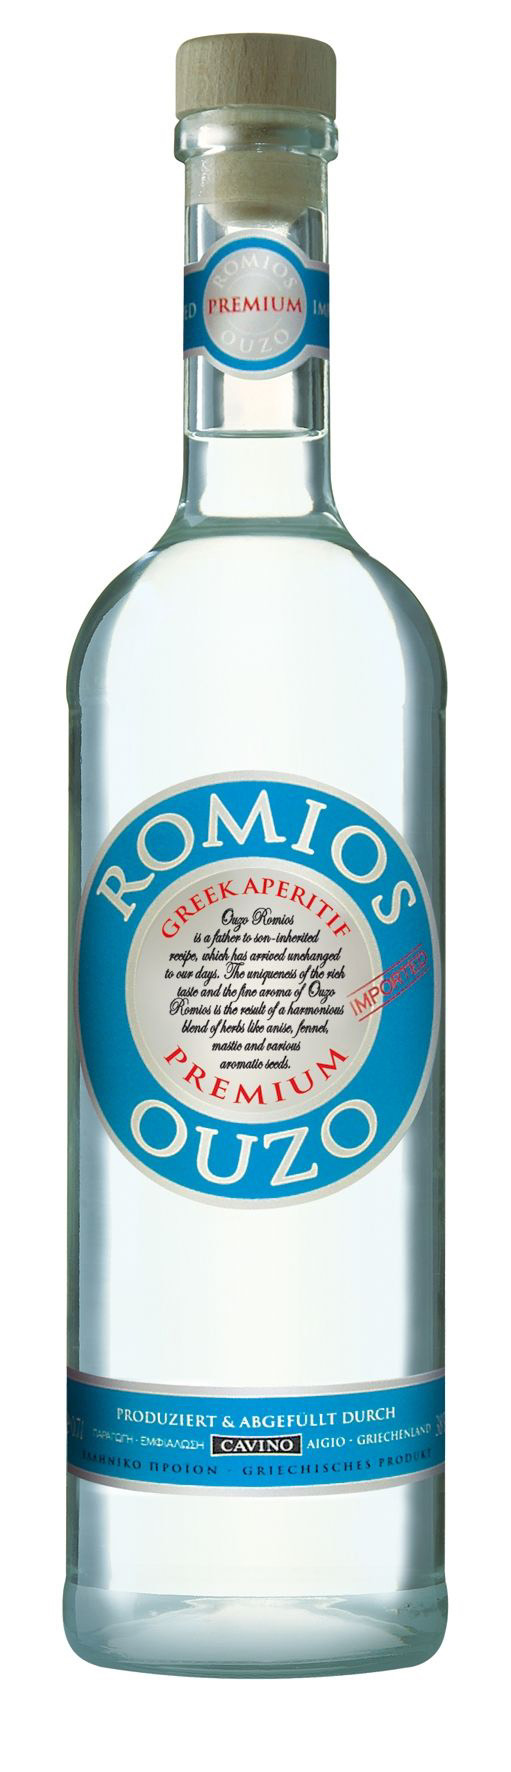 Спиртной напиток Узо "Ромиос"  креп 38%, емк 0,7л